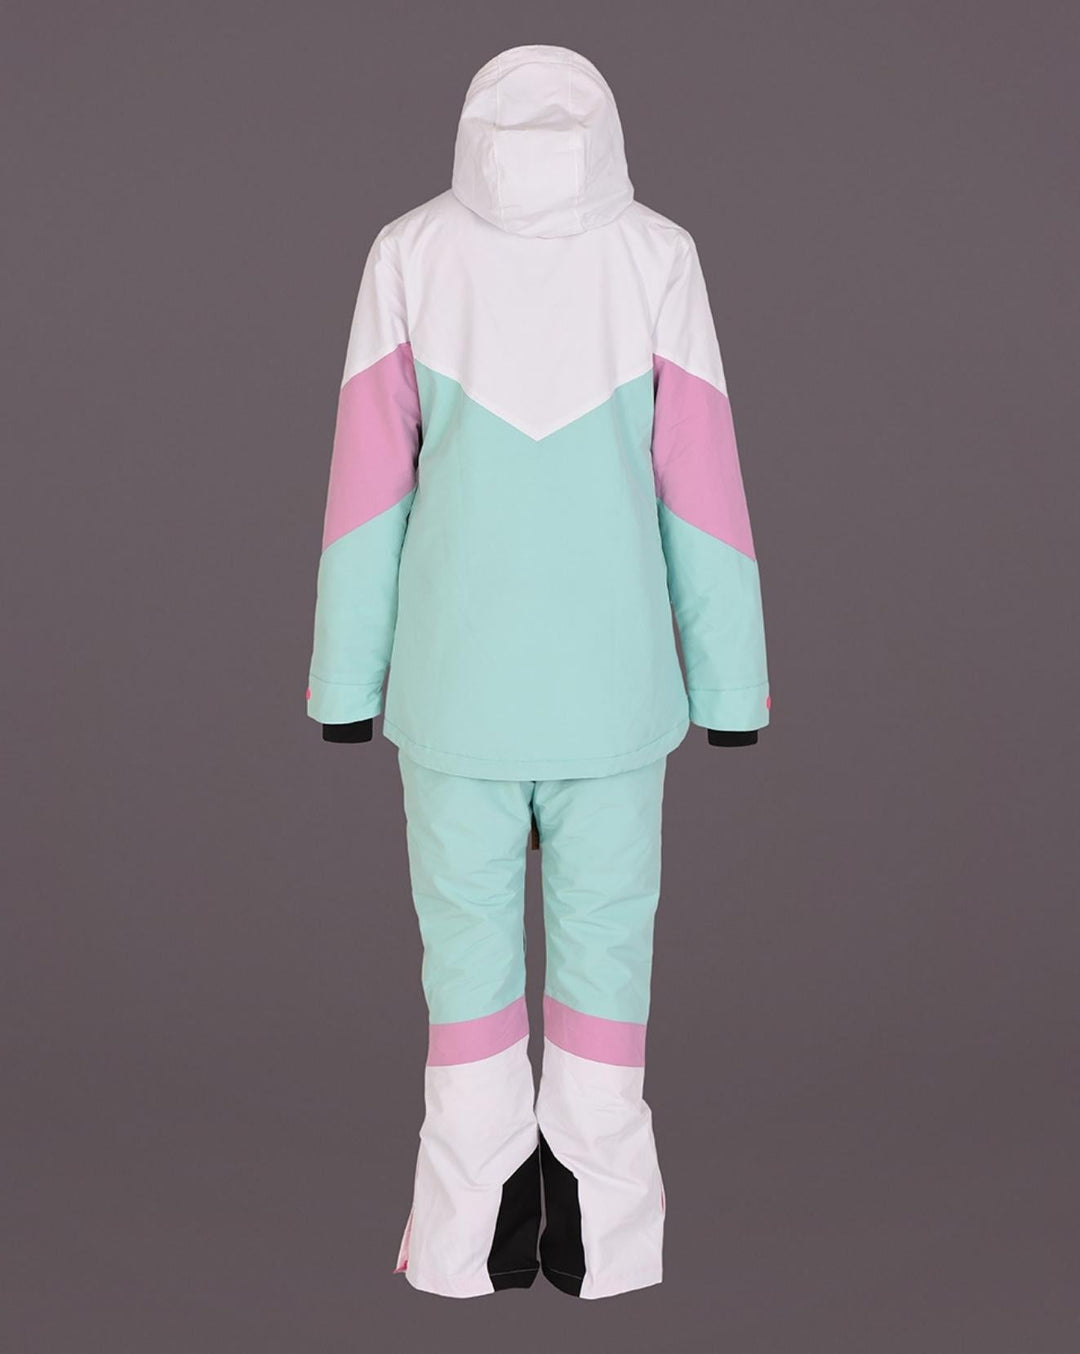 1080 Ski- und Snowboardhose für Damen – Pastellrosa, Weiß und Pastellminze